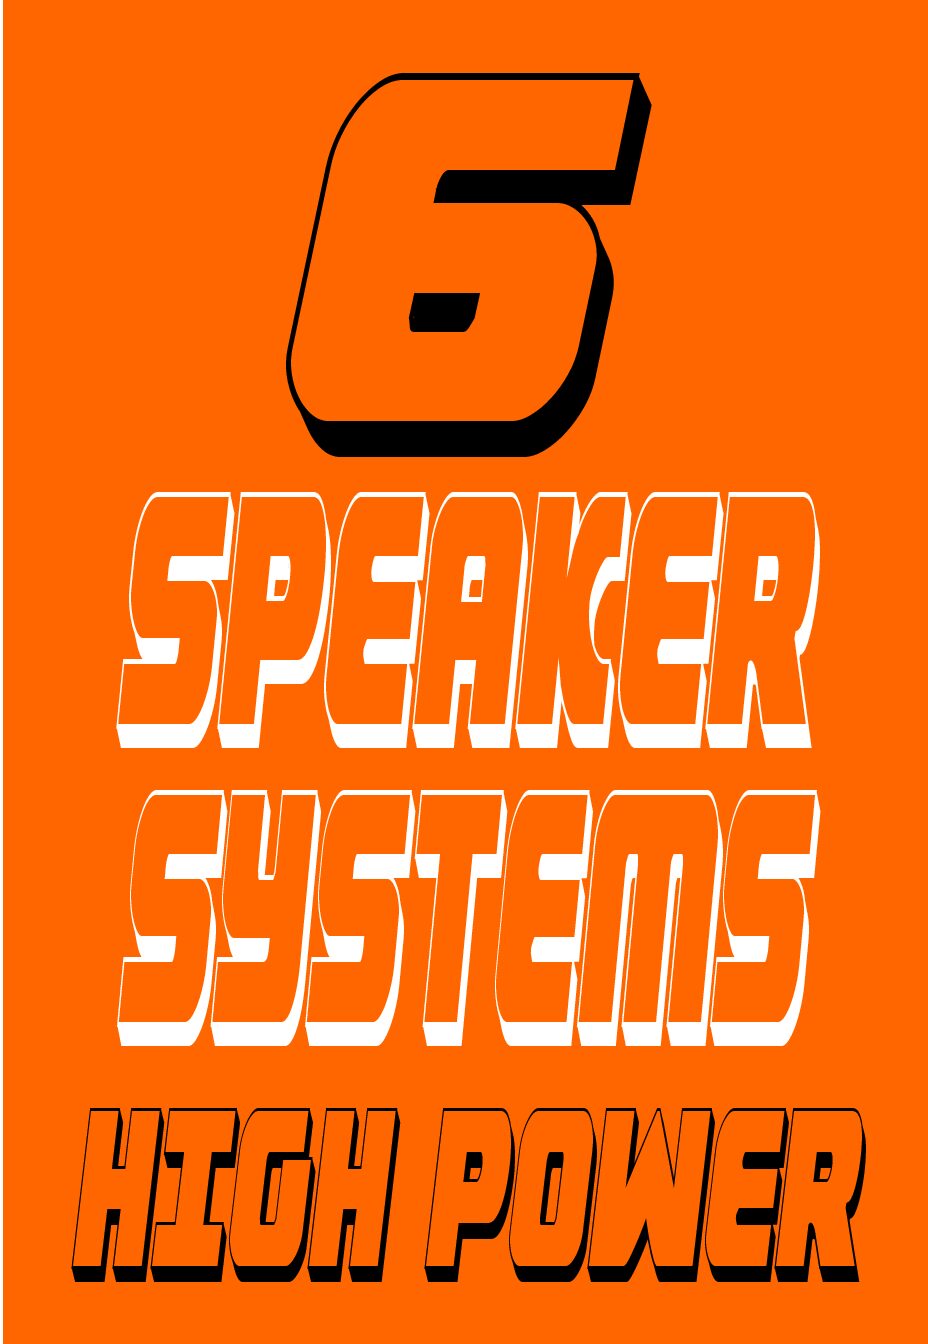 XP1K 6 SPEAKER SYSTEM 14-18